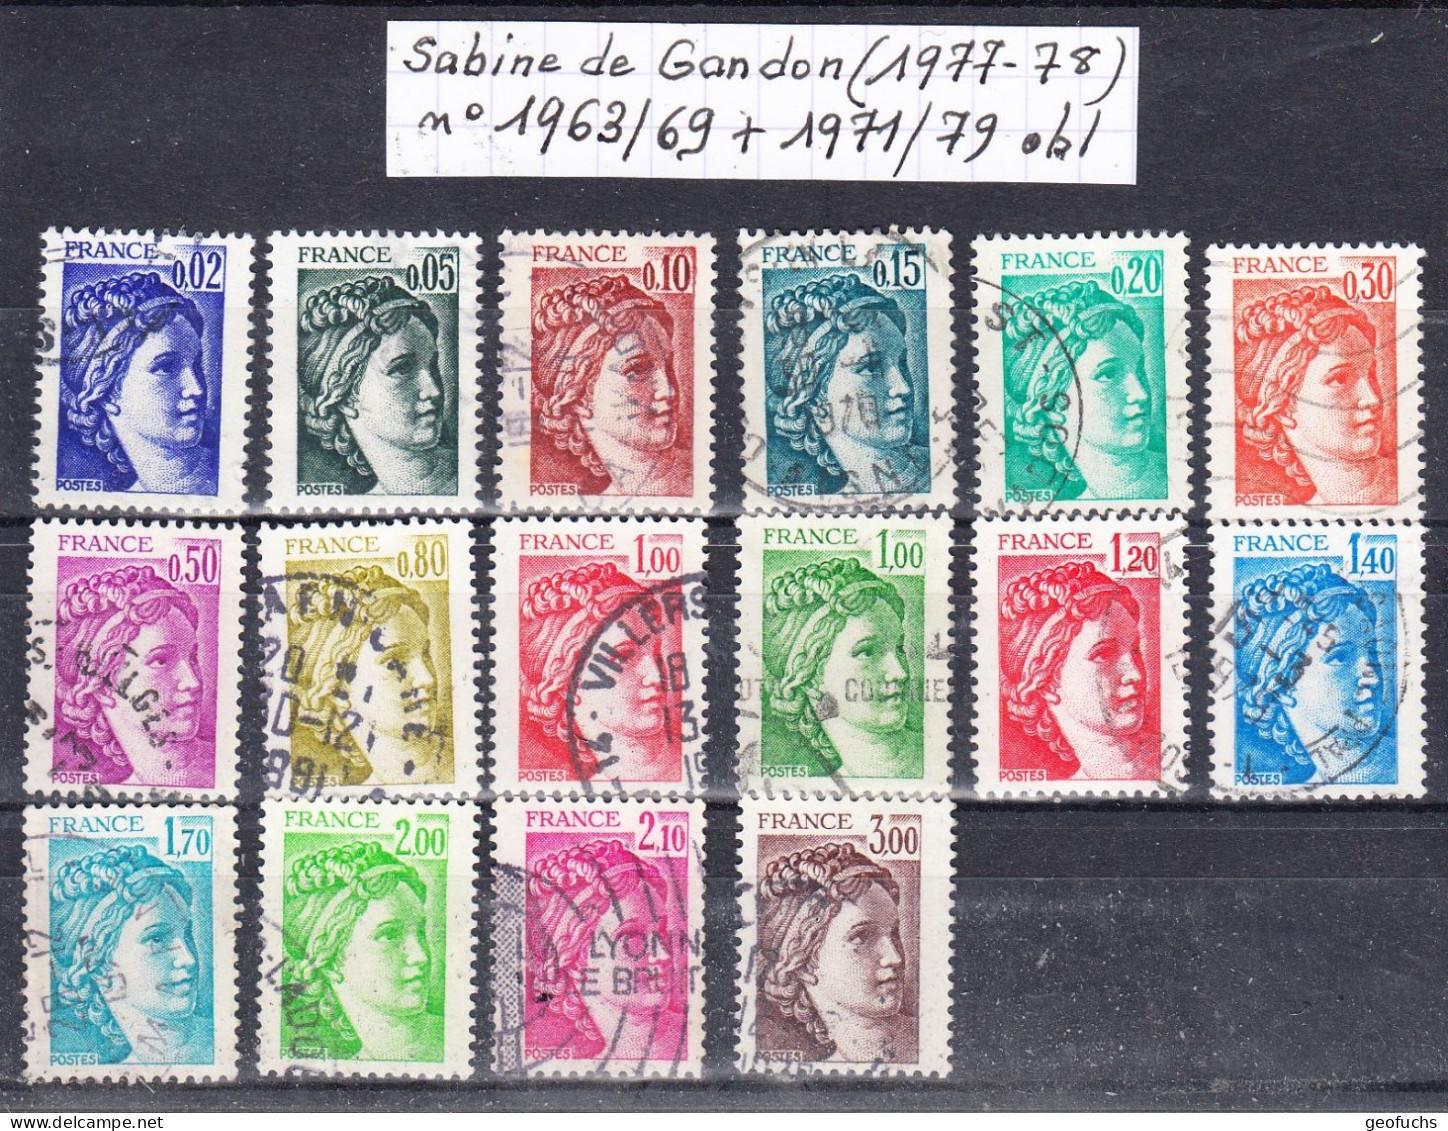 France Sabine De Gandon (1977-78) Y/T N°1963/69 + 1971/79 Oblitérés - 1977-1981 Sabine Of Gandon